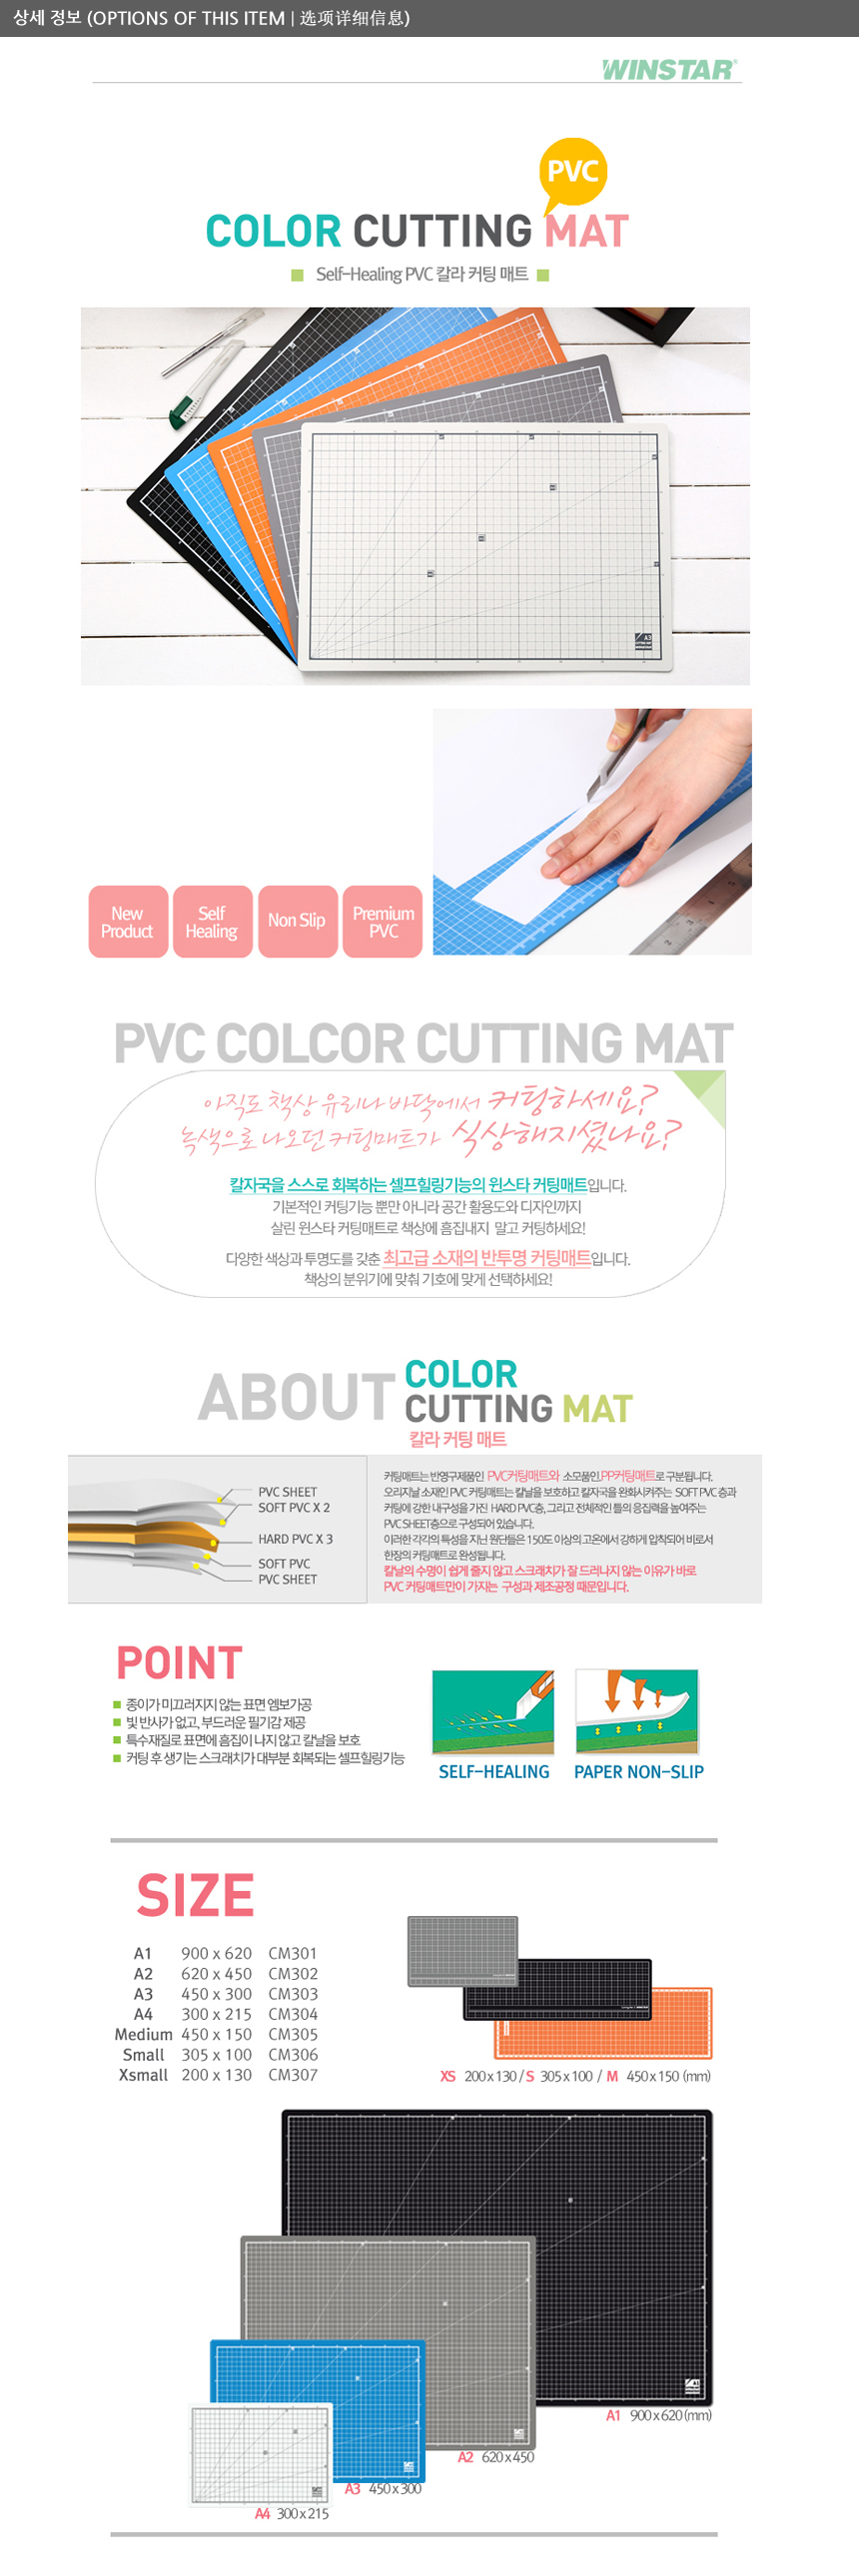 winstar_colorcutting_mat_1.jpg